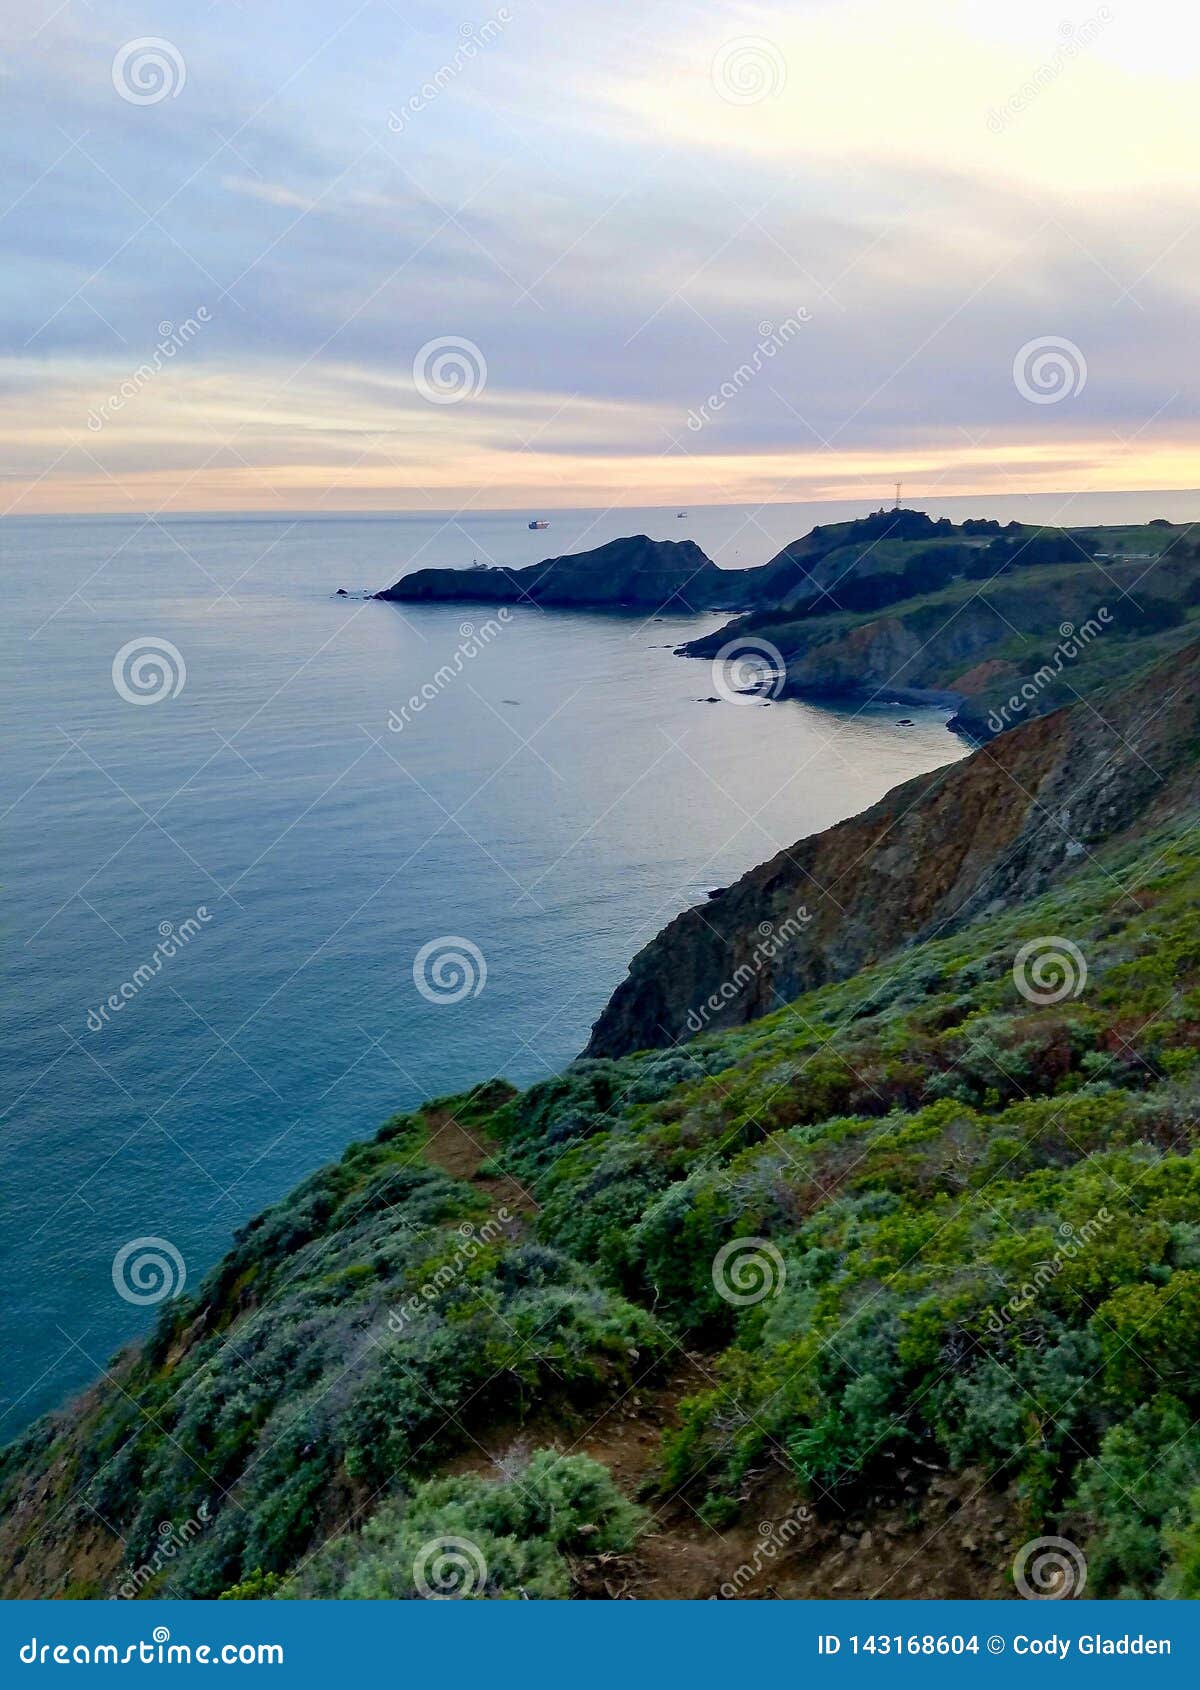 Cliffside-Ansicht des Ozeans, wie von Marin Headlands gesehen. Cliffside-Ansicht des Ozeans, wie von Marin Headlands im Bucht-Bereich, Kalifornien nahe San Francisco gesehen